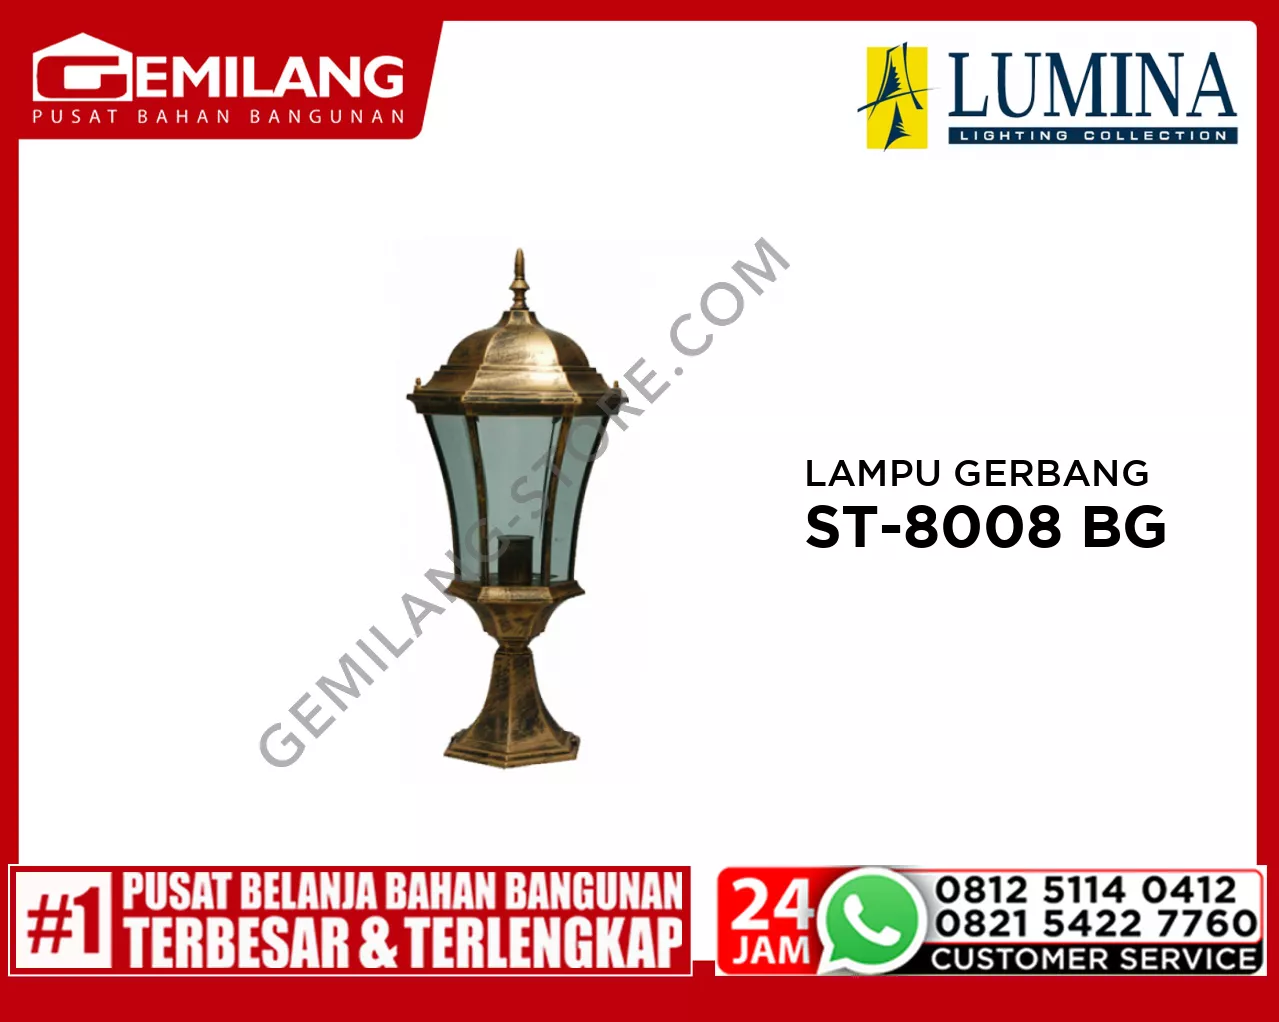 LAMPU GERBANG ST-8008 BG